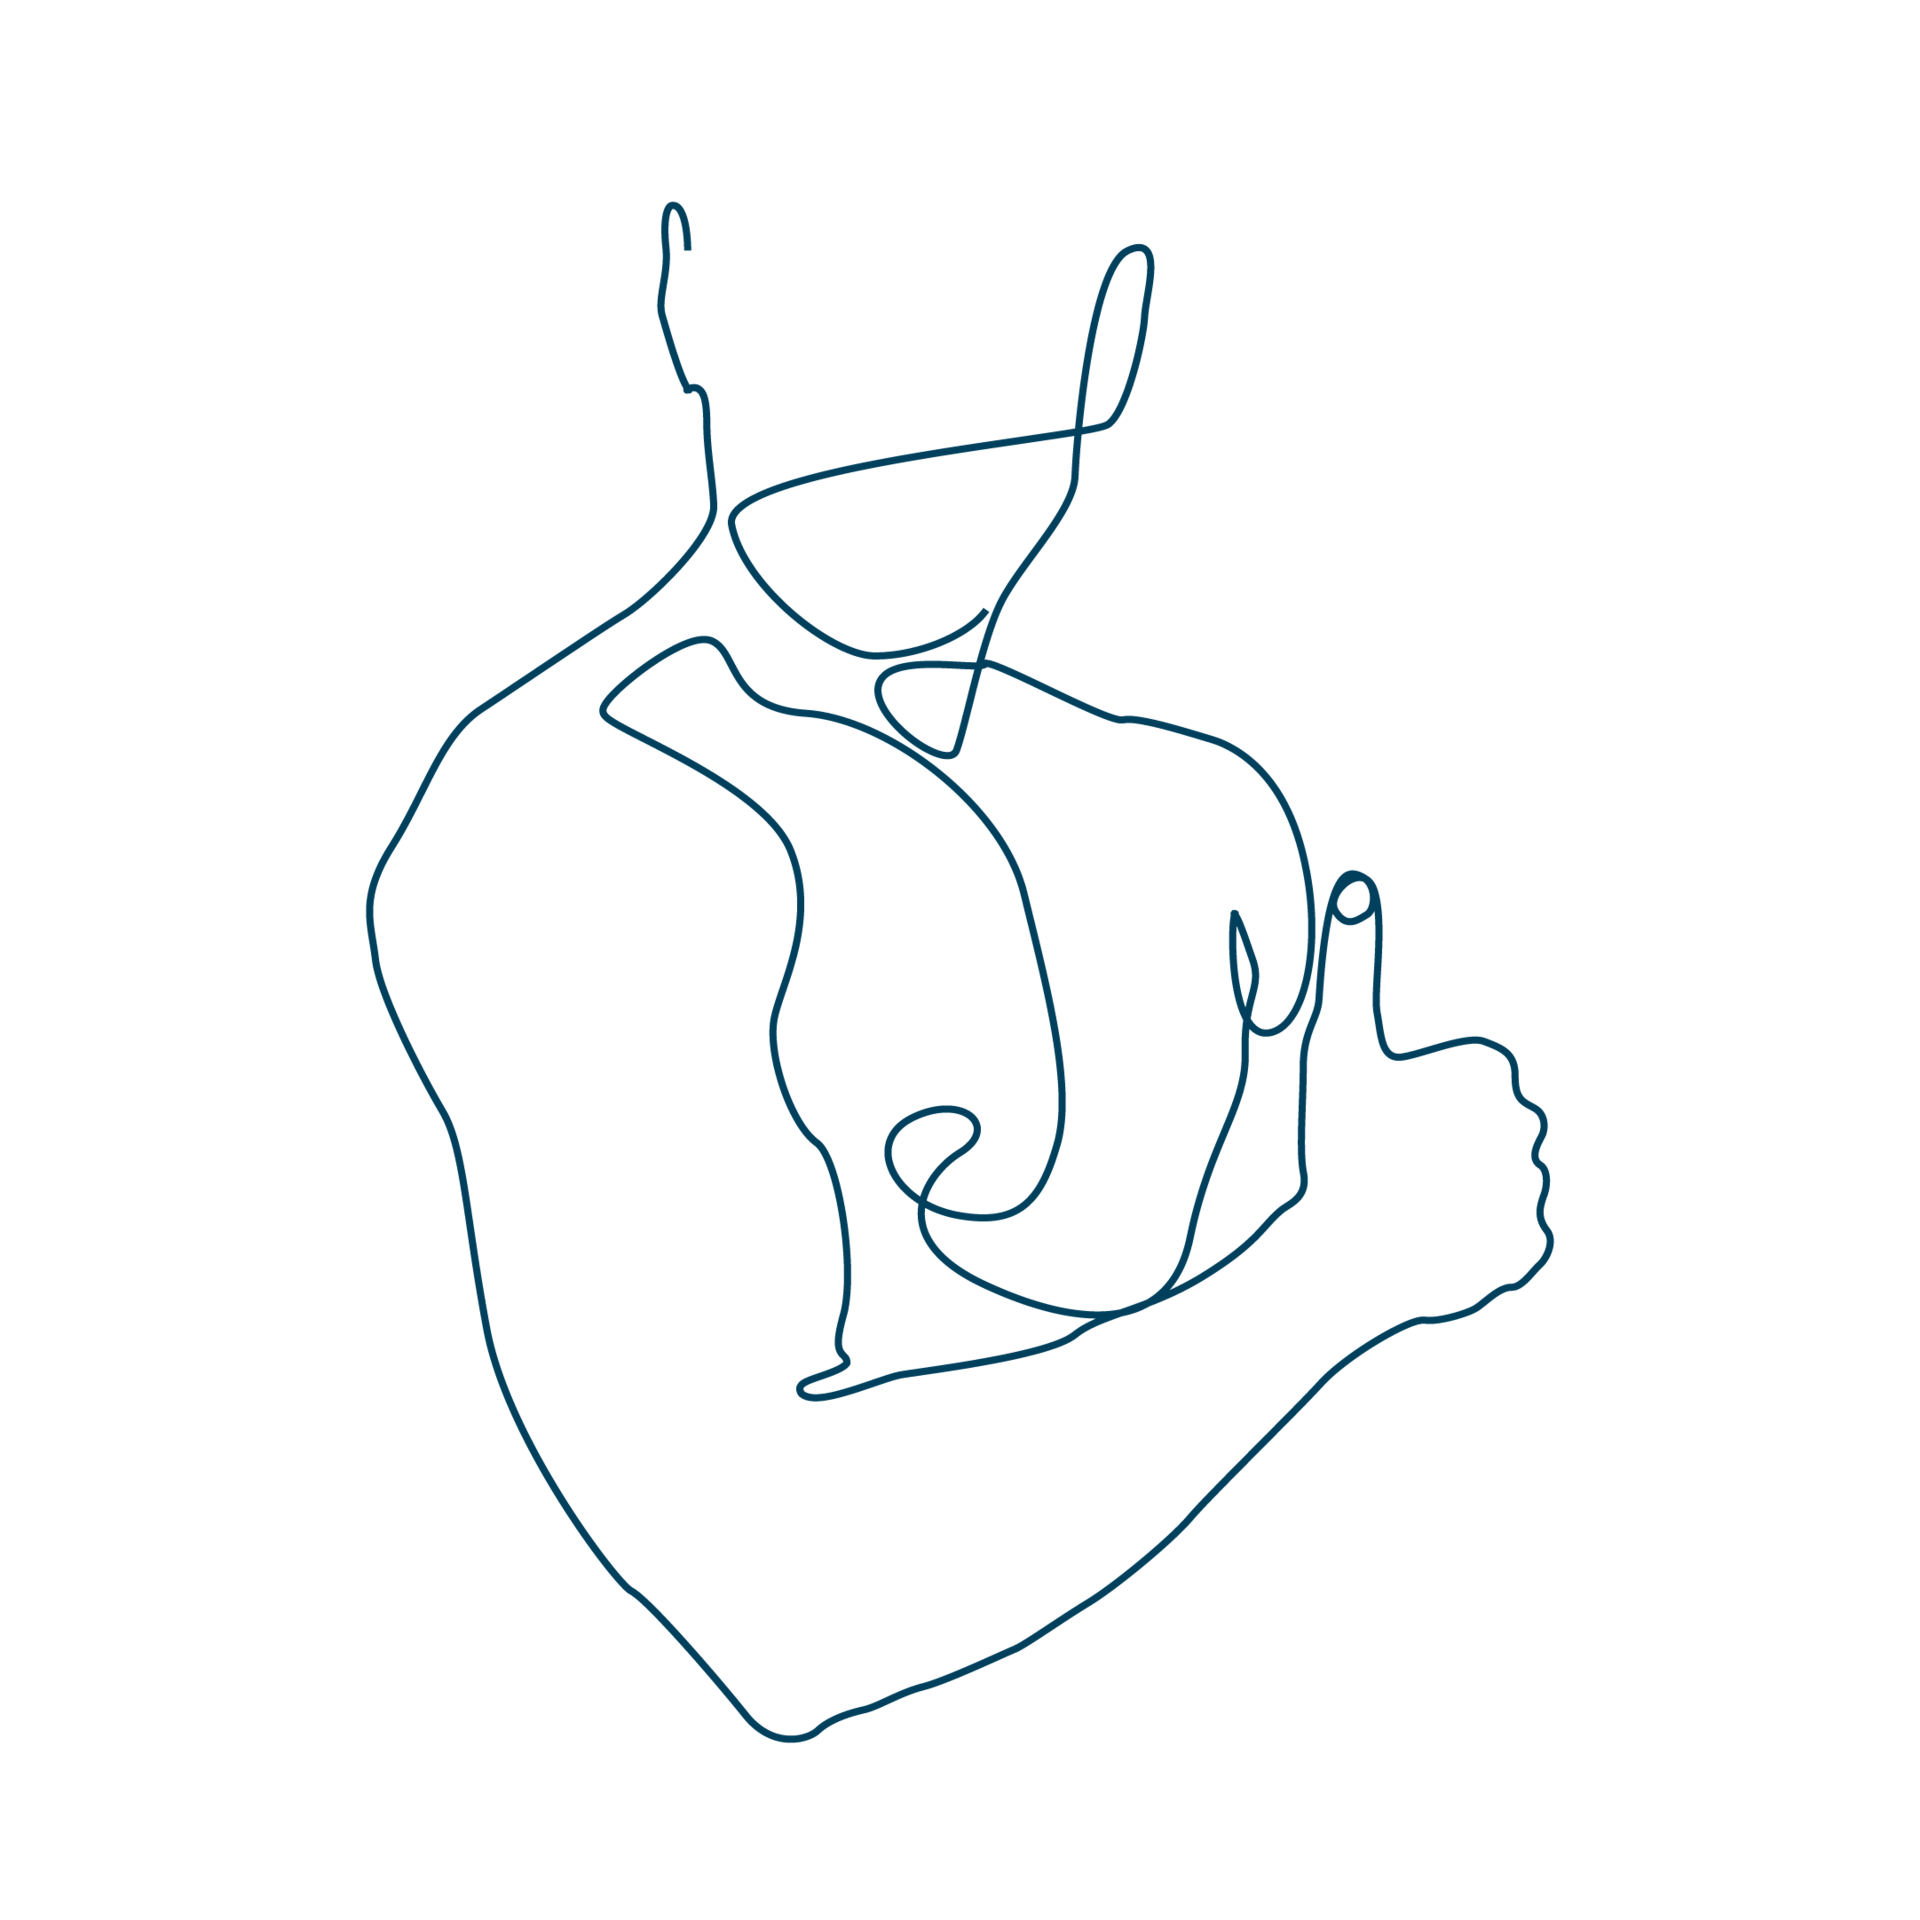 Diese Line-Art-Zeichnung eines Torsos bildet den Link zur Seite mit Produkten für Muskeln und Gelenke.